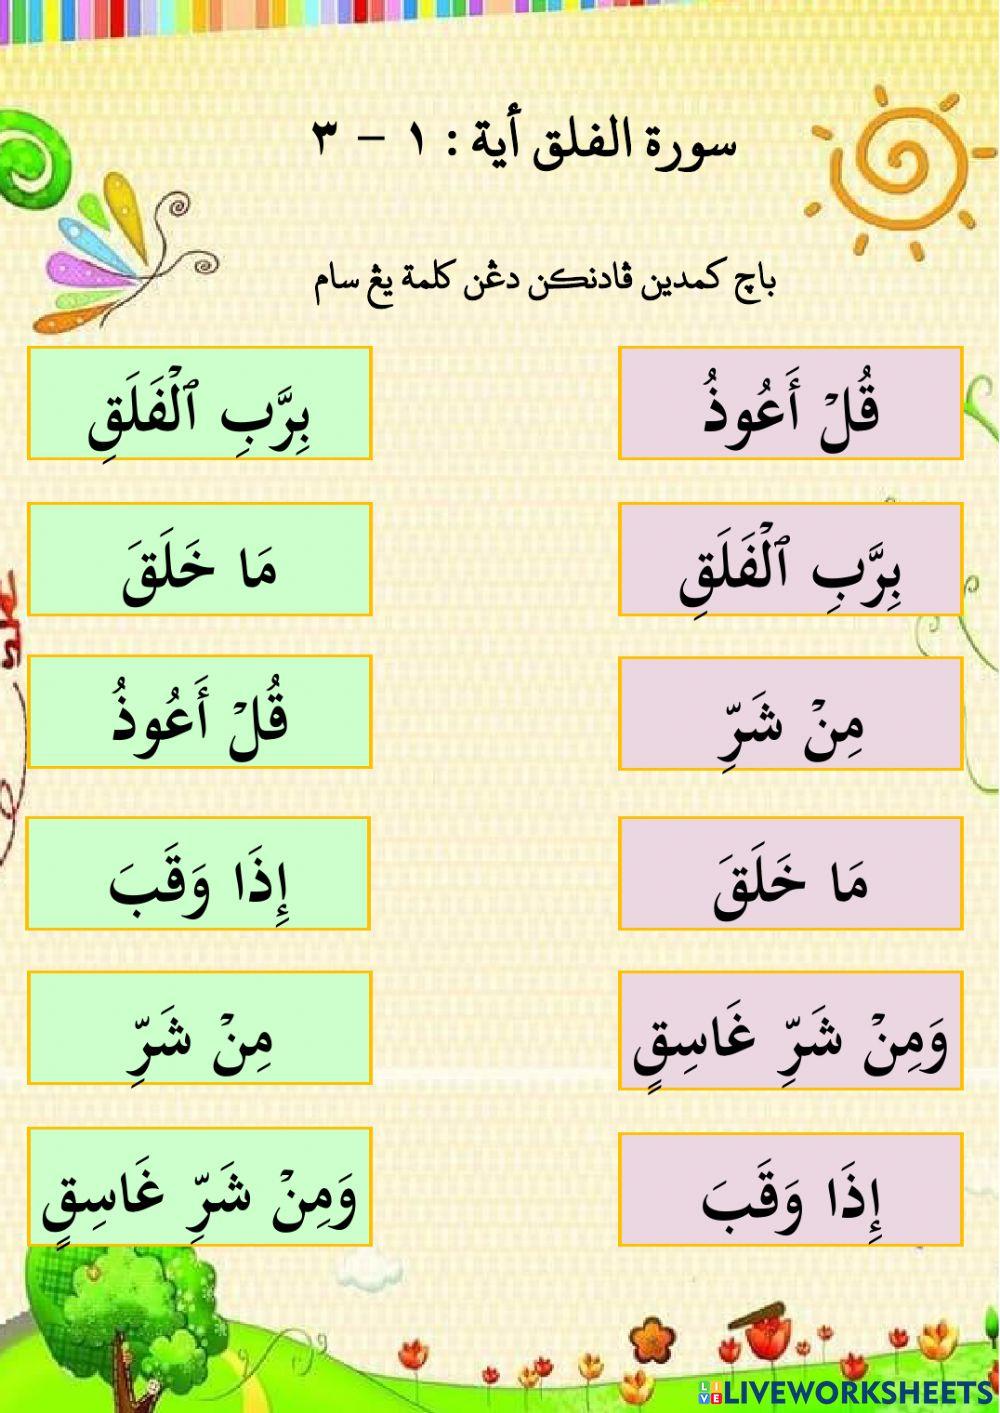 Surah Al-Falaq (Ayat 1-3)